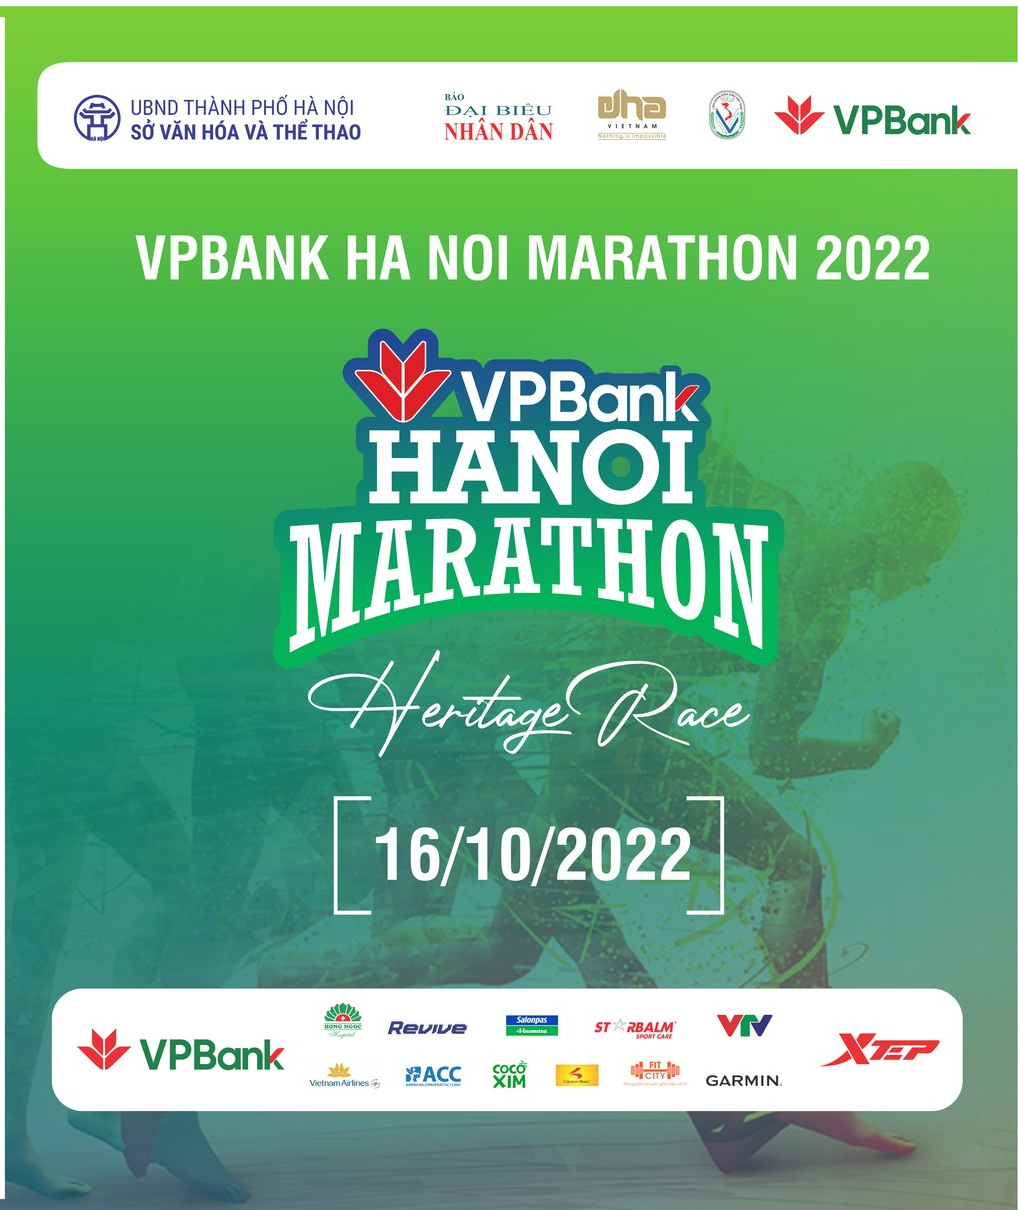 Thông Cáo Báo Chí: Hơn 10.000 VĐV đăng ký VPBank Hanoi Marathon 2022